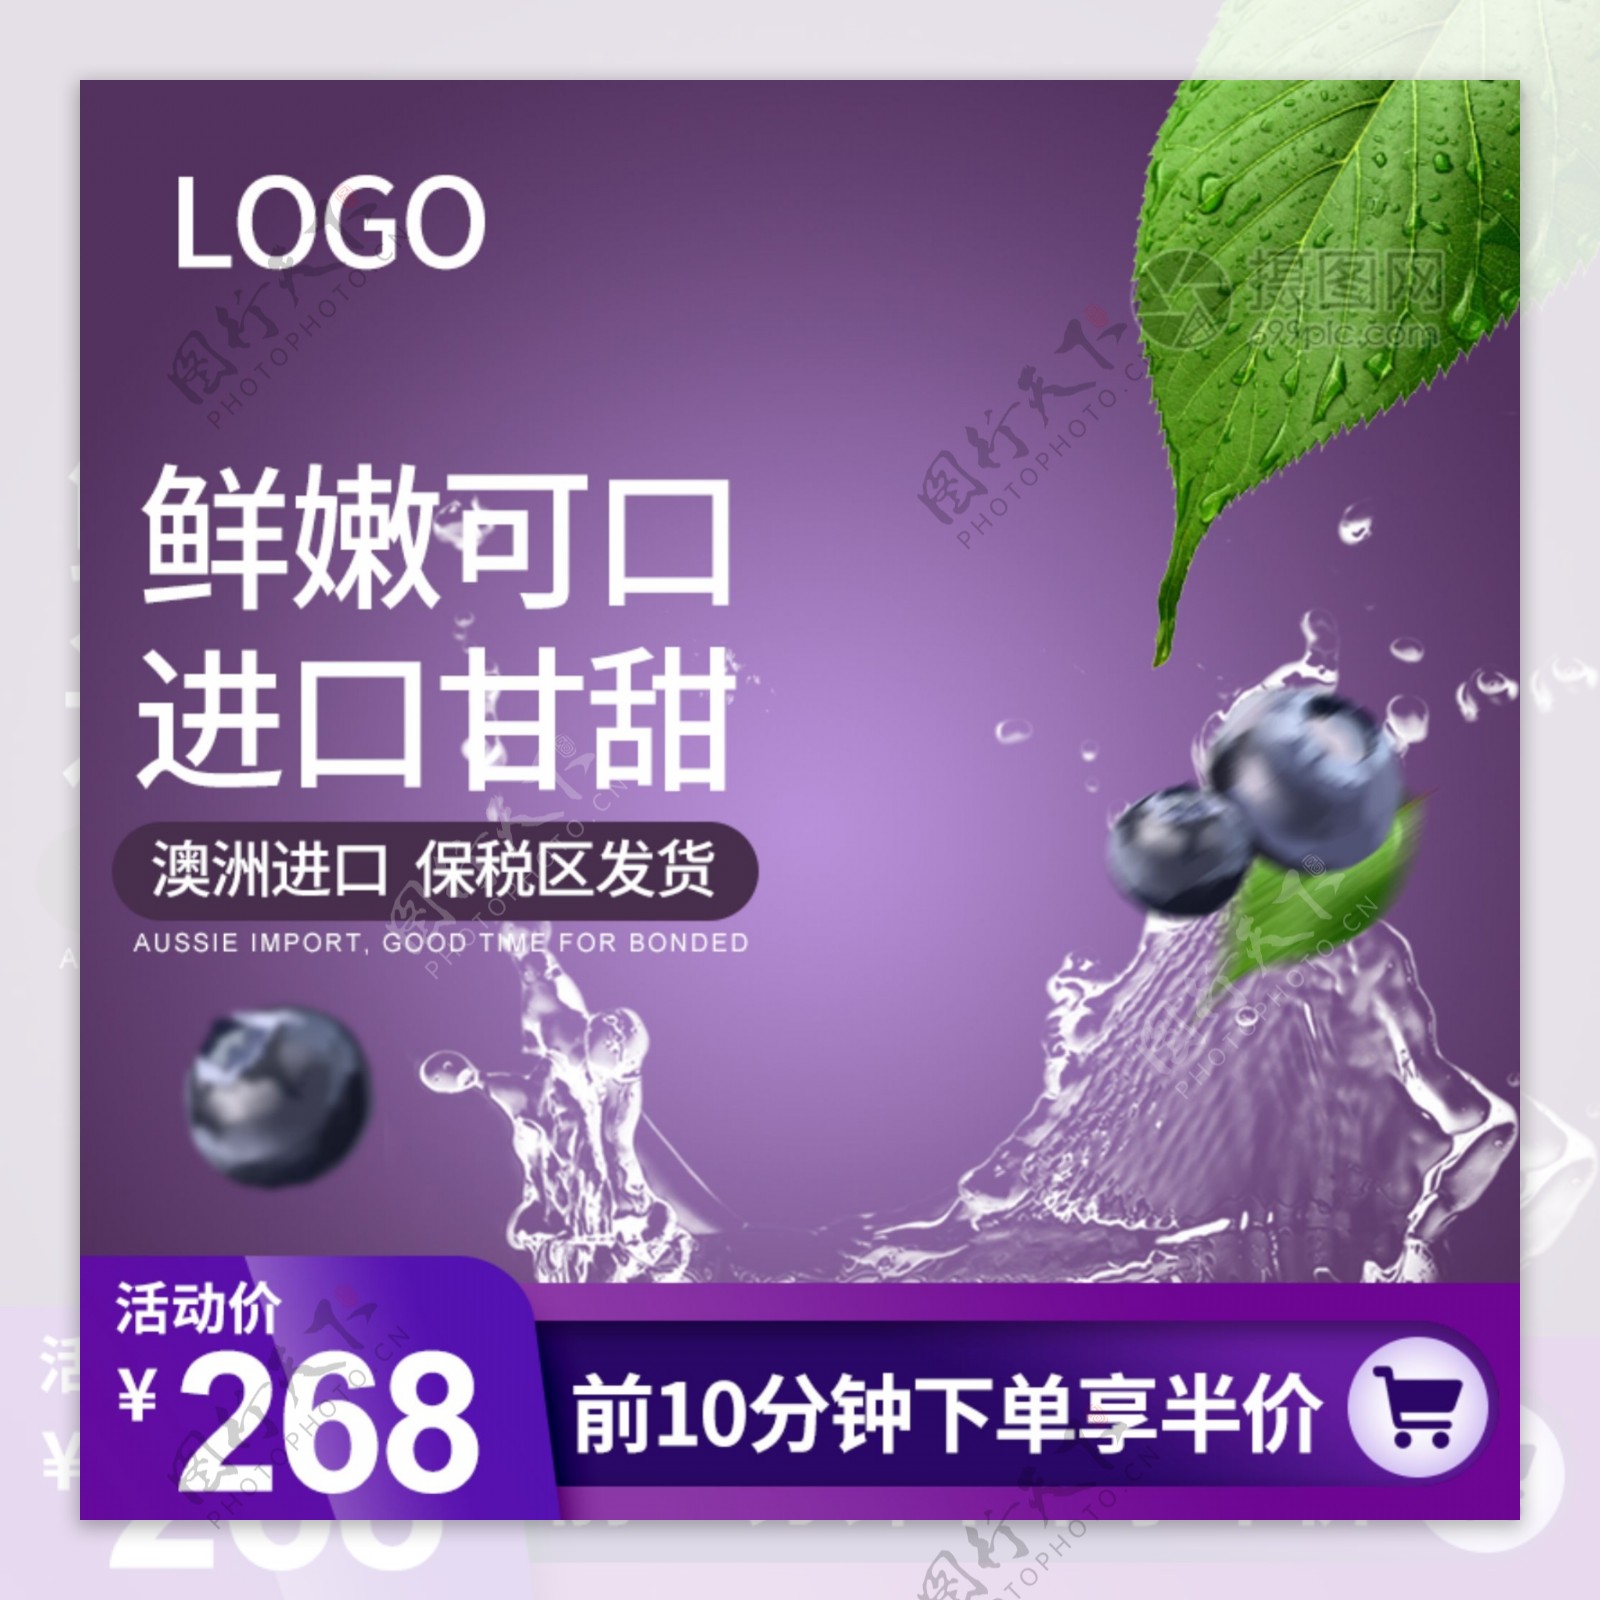 紫色大气新鲜进口水果生鲜产品淘宝主图模板